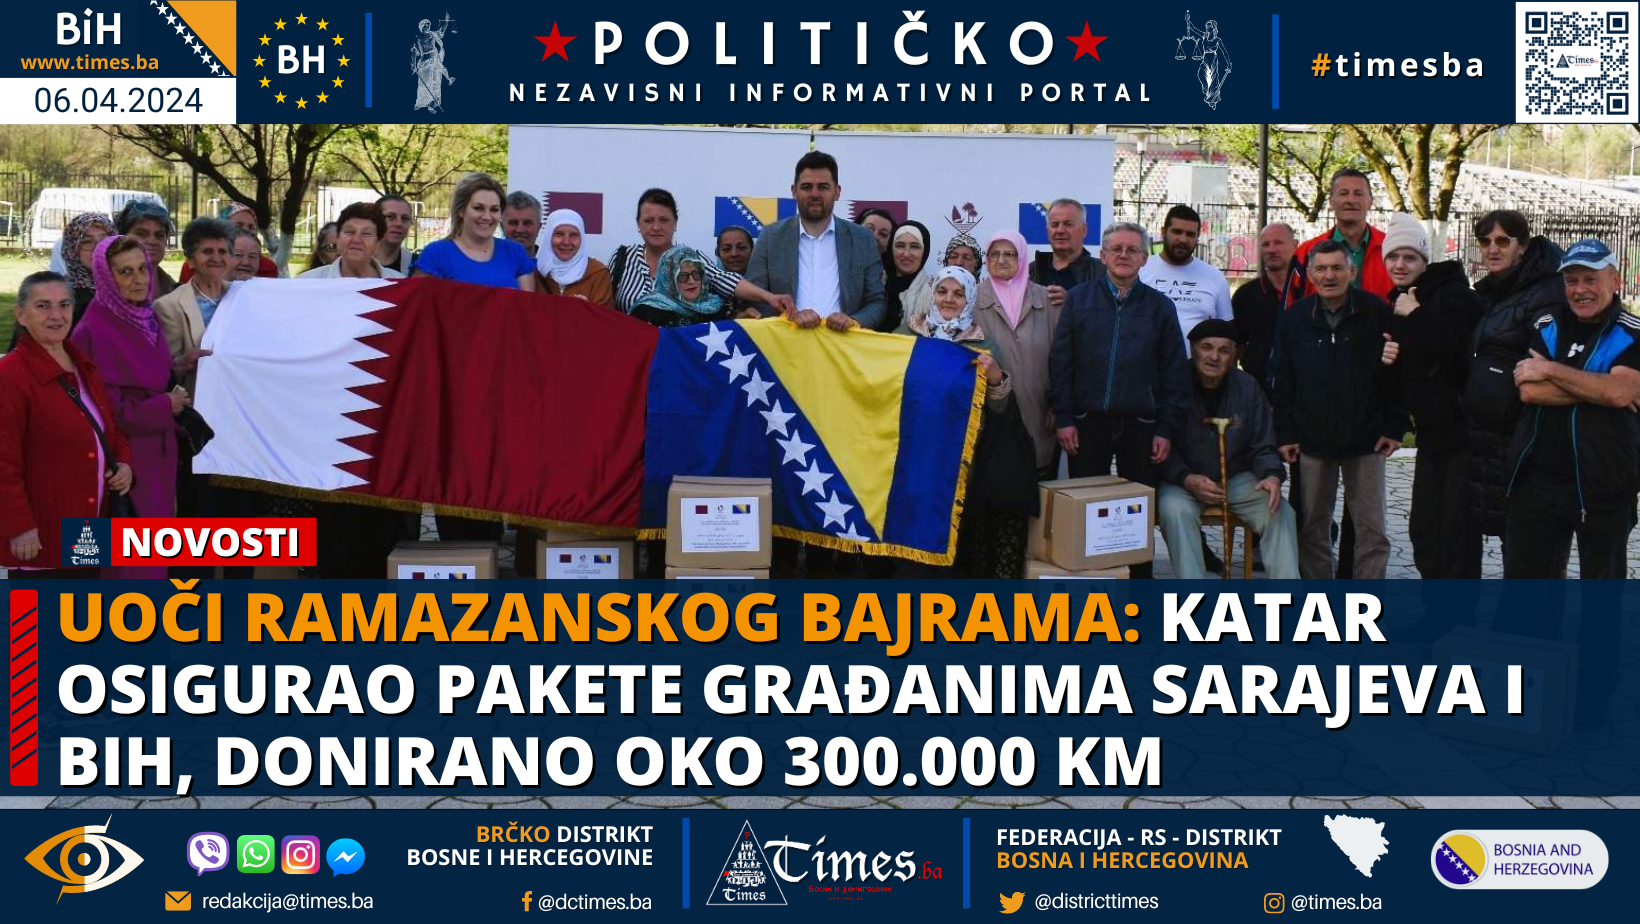 Uoči Ramazanskog bajrama: Katar osigurao pakete građanima Sarajeva i BiH, donirano oko 300.000 KM